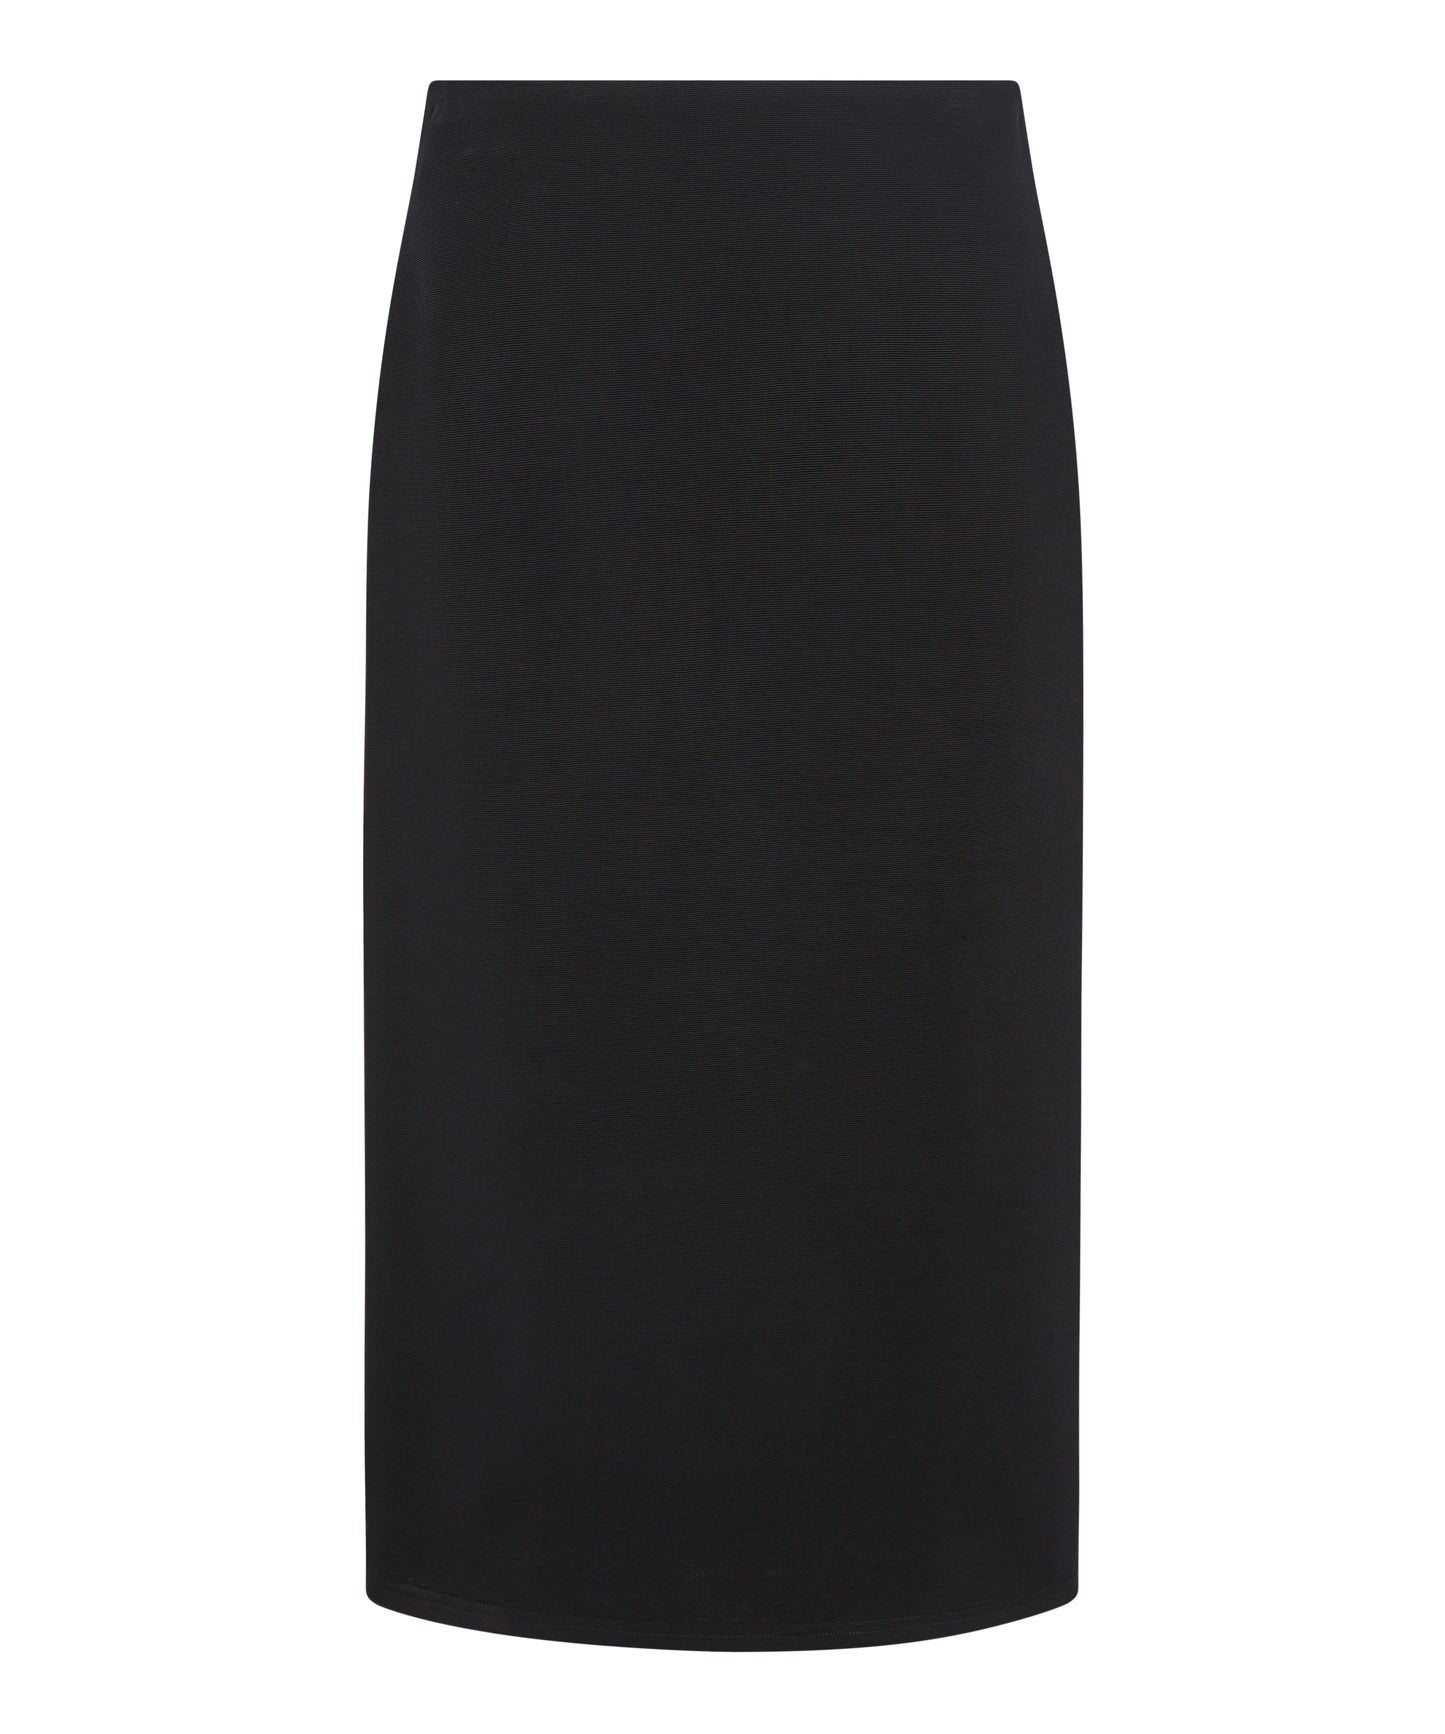 Outline London Womens Tower Skirt in Black